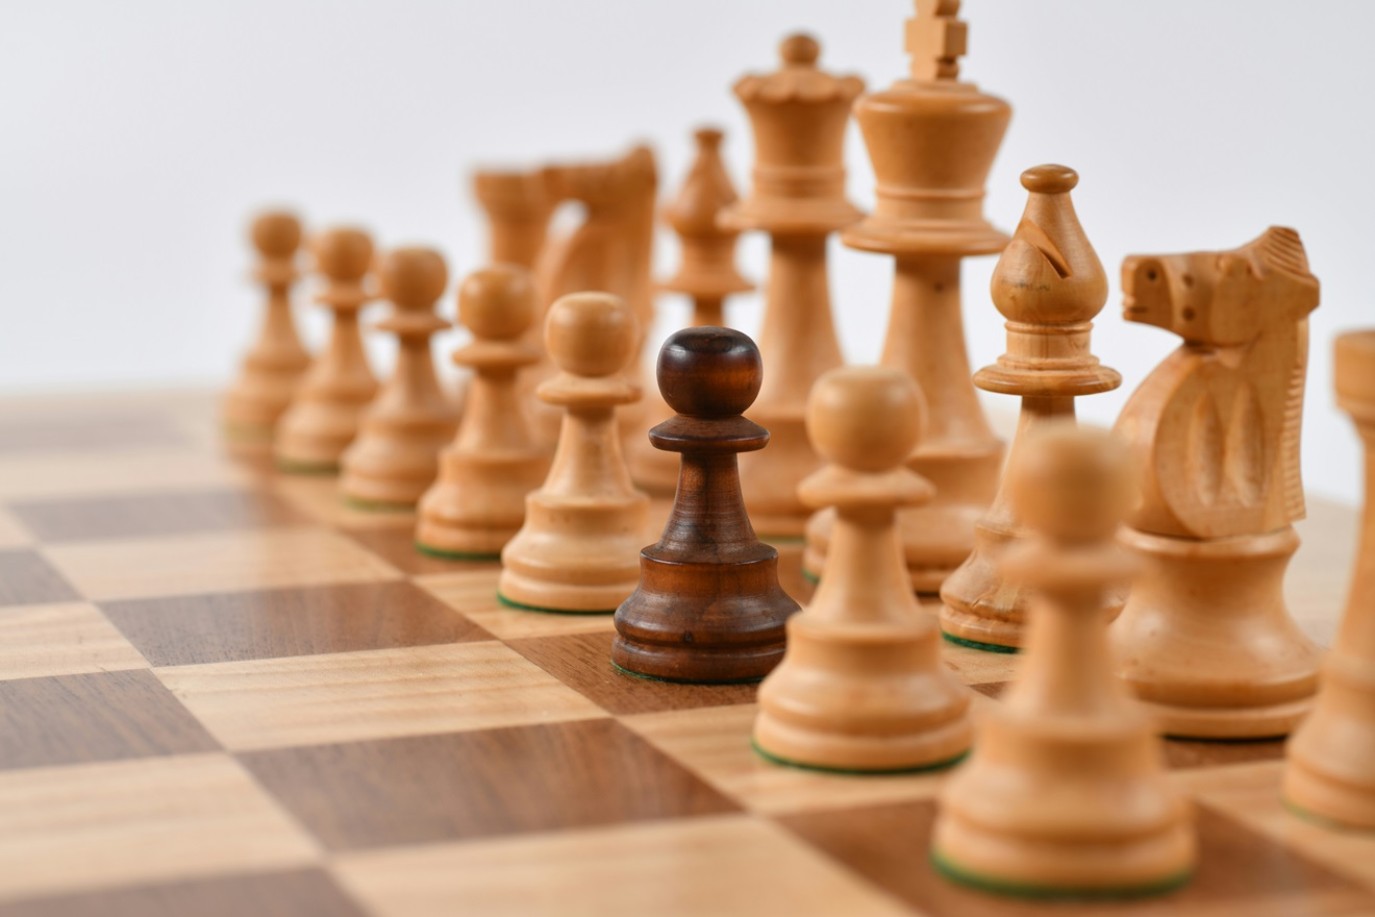 “业余”国际象棋锦标赛将于 6 月 21 日在 Al Sharqiya 拉开帷幕